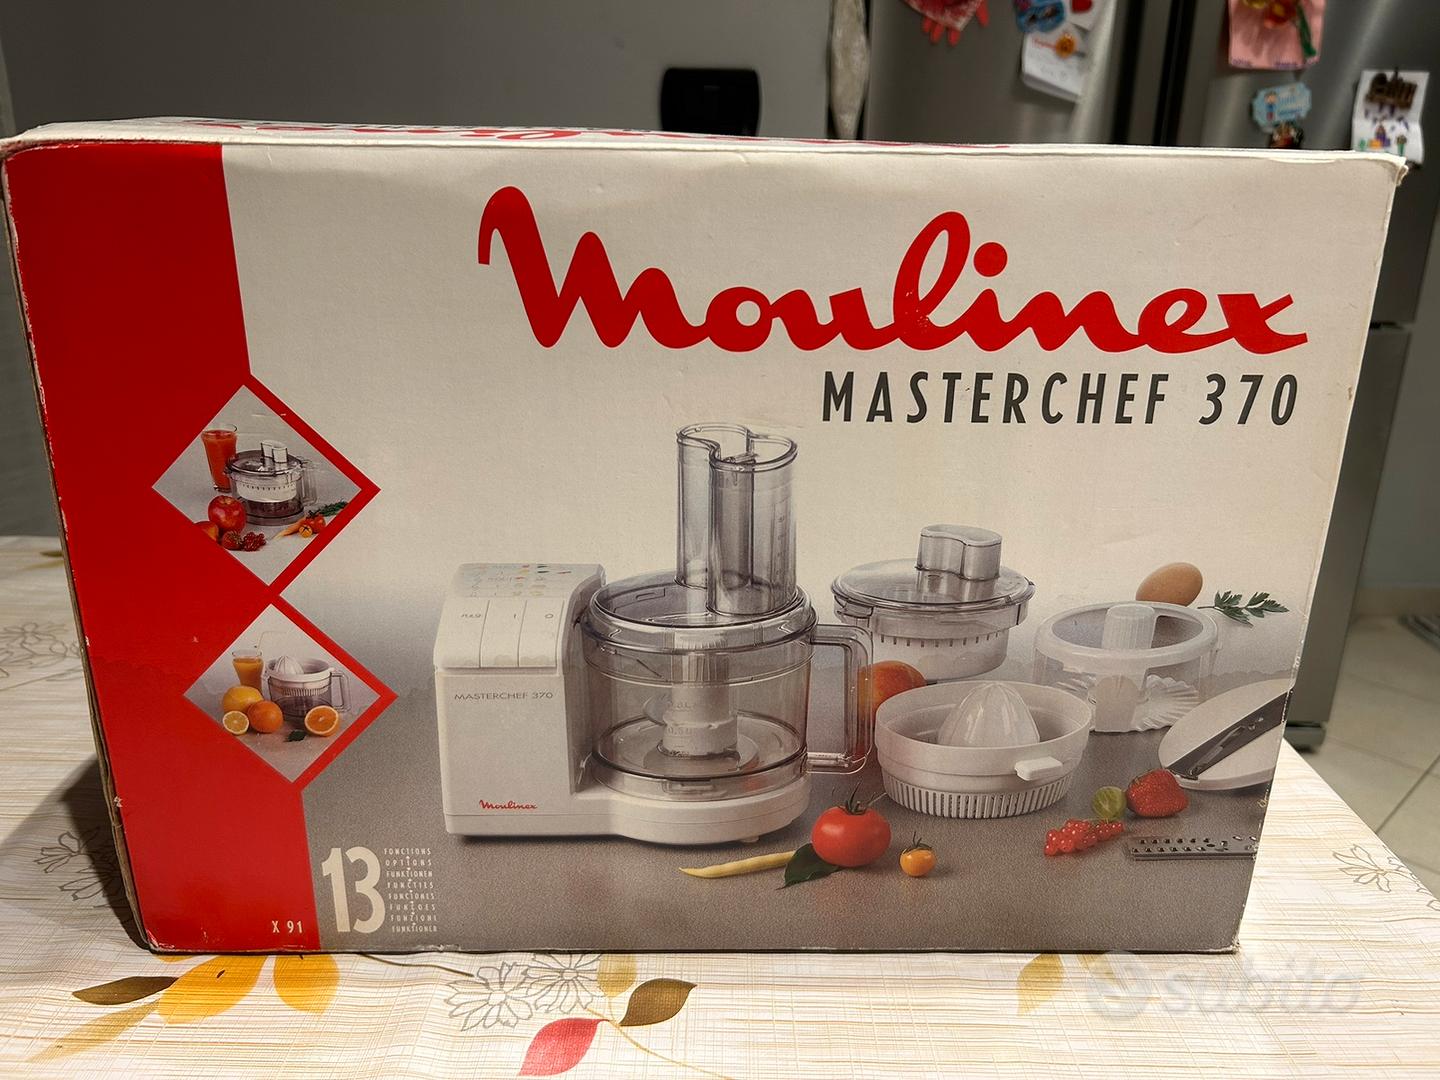 Robot Moulinex Cokeo - Elettrodomestici In vendita a Torino